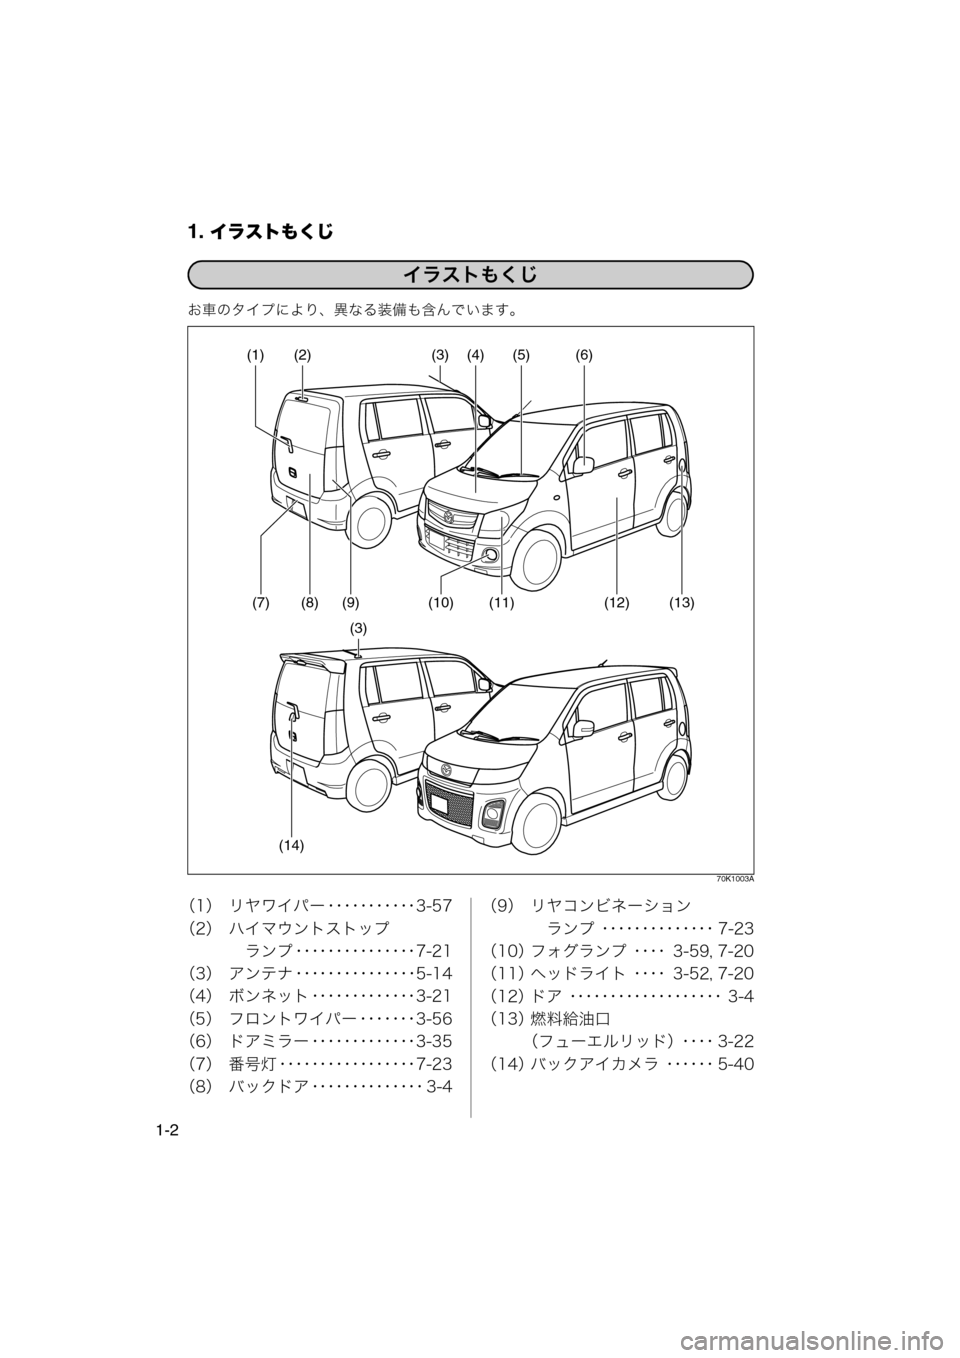 MAZDA MODEL AZ-WAGON 2011  取扱説明書 (in Japanese) 1. イラストもくじ
1-2
お車のタイプにより、異なる装備も含んでいます。
70K1003A
（1） リヤワイパー ･･･････････3-57
（2） ハイマウント�